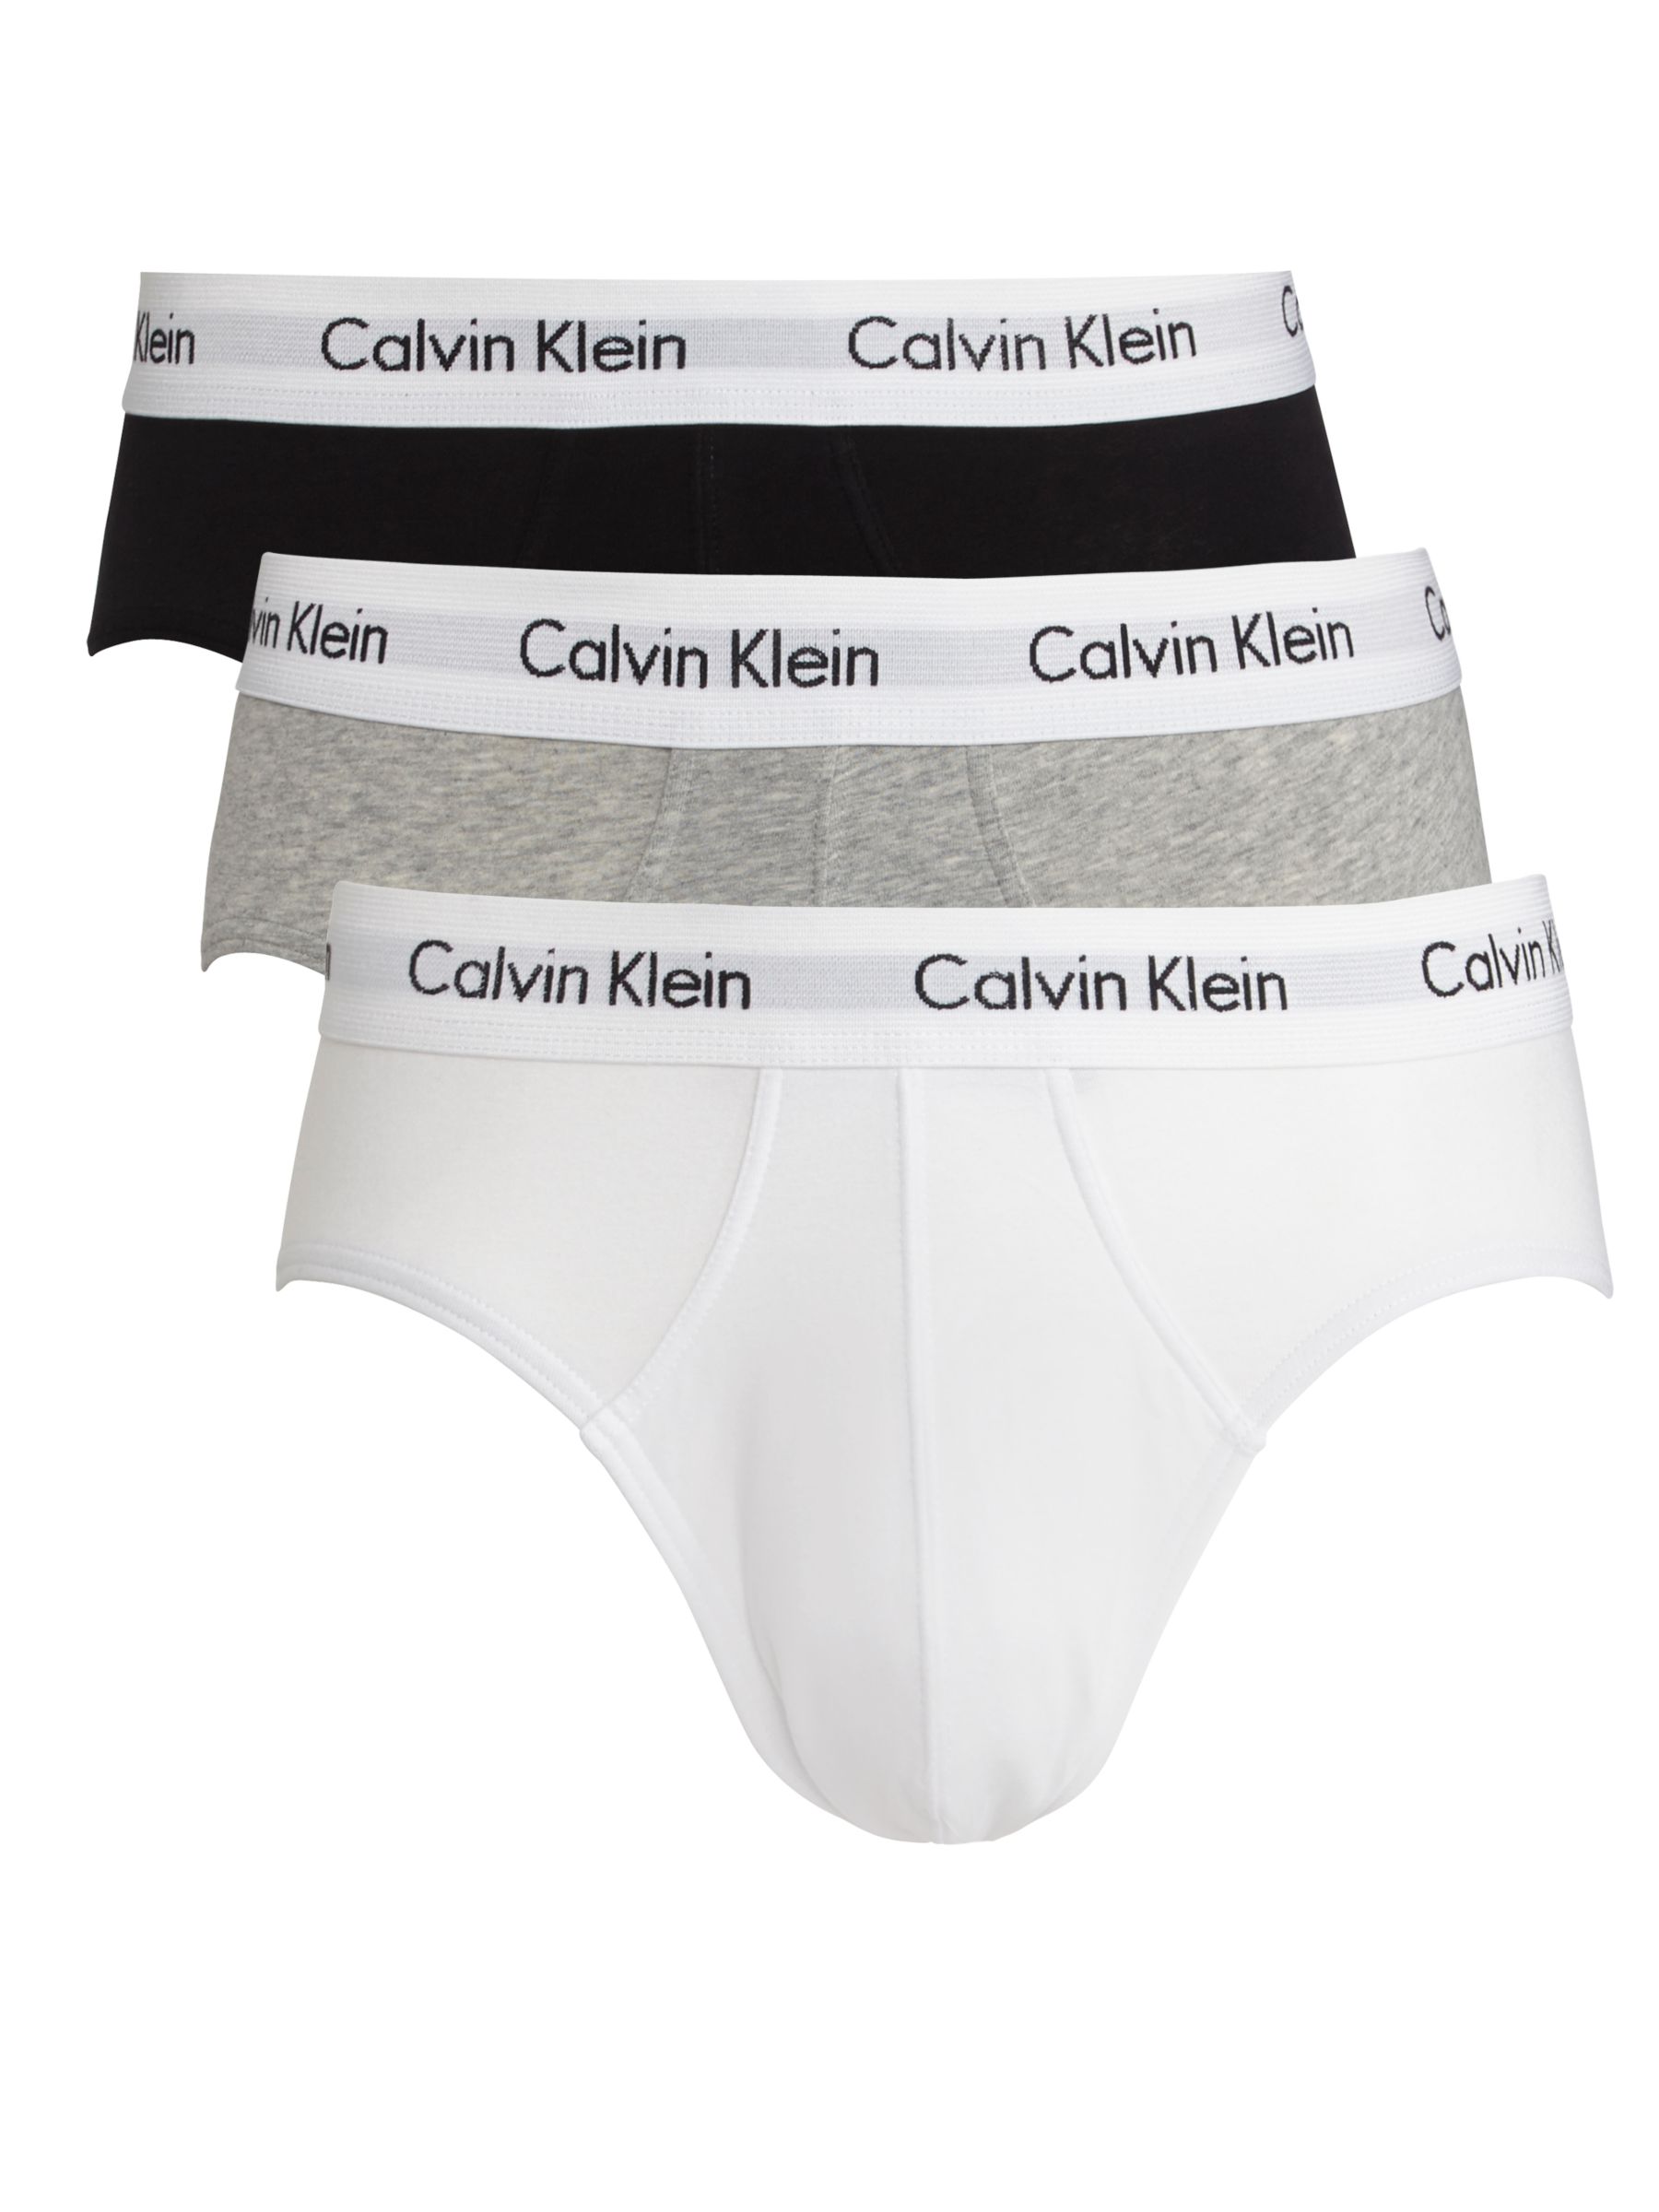 Buy Calvin Klein Underwear Cotton Briefs, Pack of 3, Black/Grey/White ...